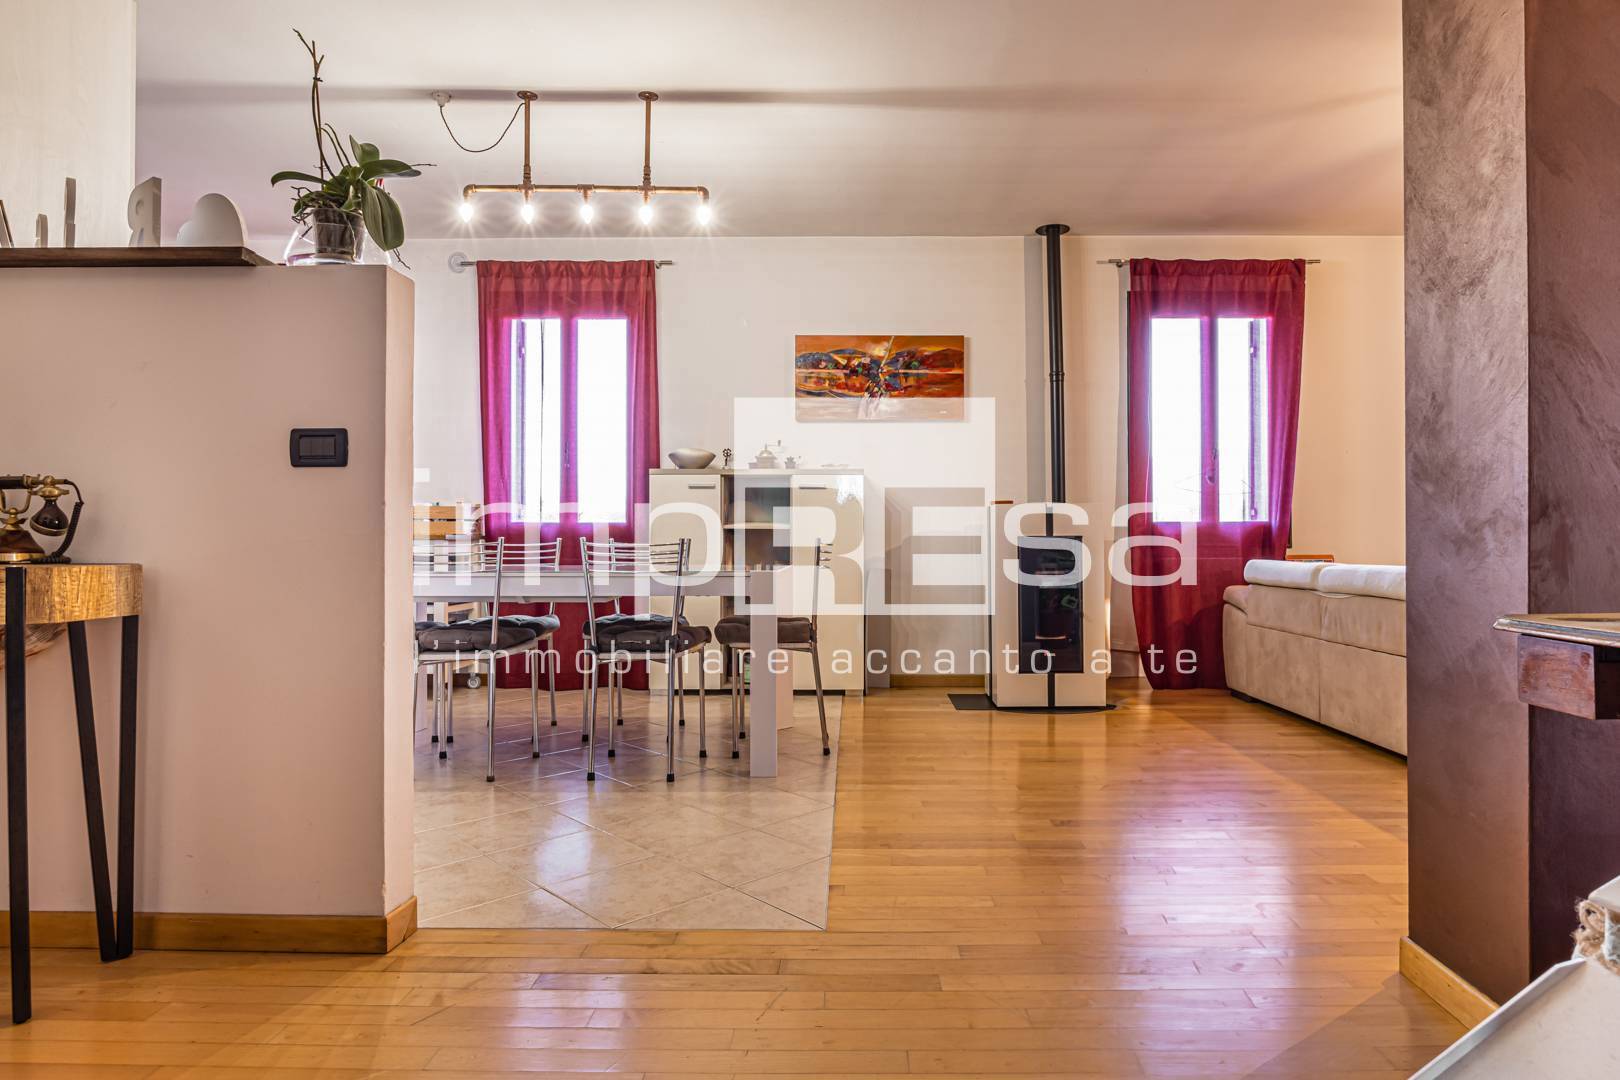 Appartamento in vendita a Cordignano, 6 locali, zona dello, prezzo € 170.000 | PortaleAgenzieImmobiliari.it